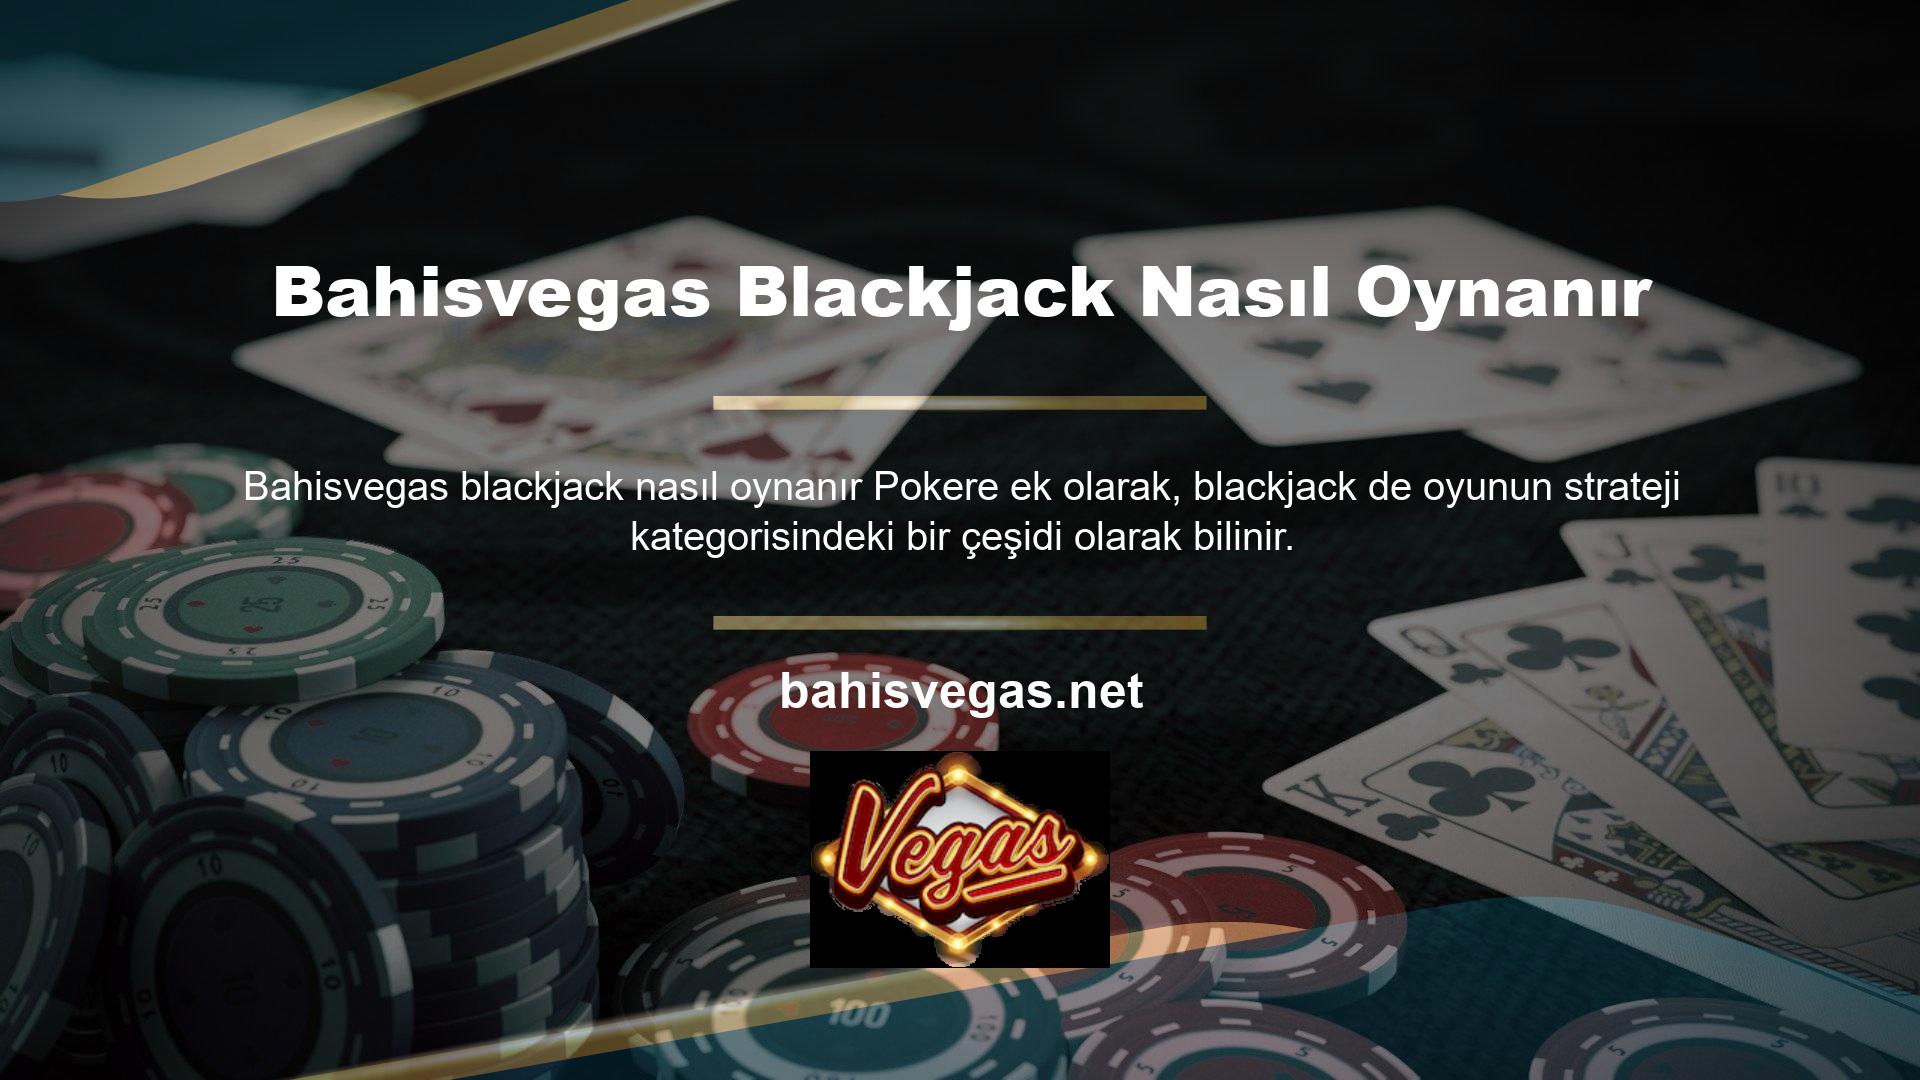 Bahisvegas blackjack nasıl oynanır